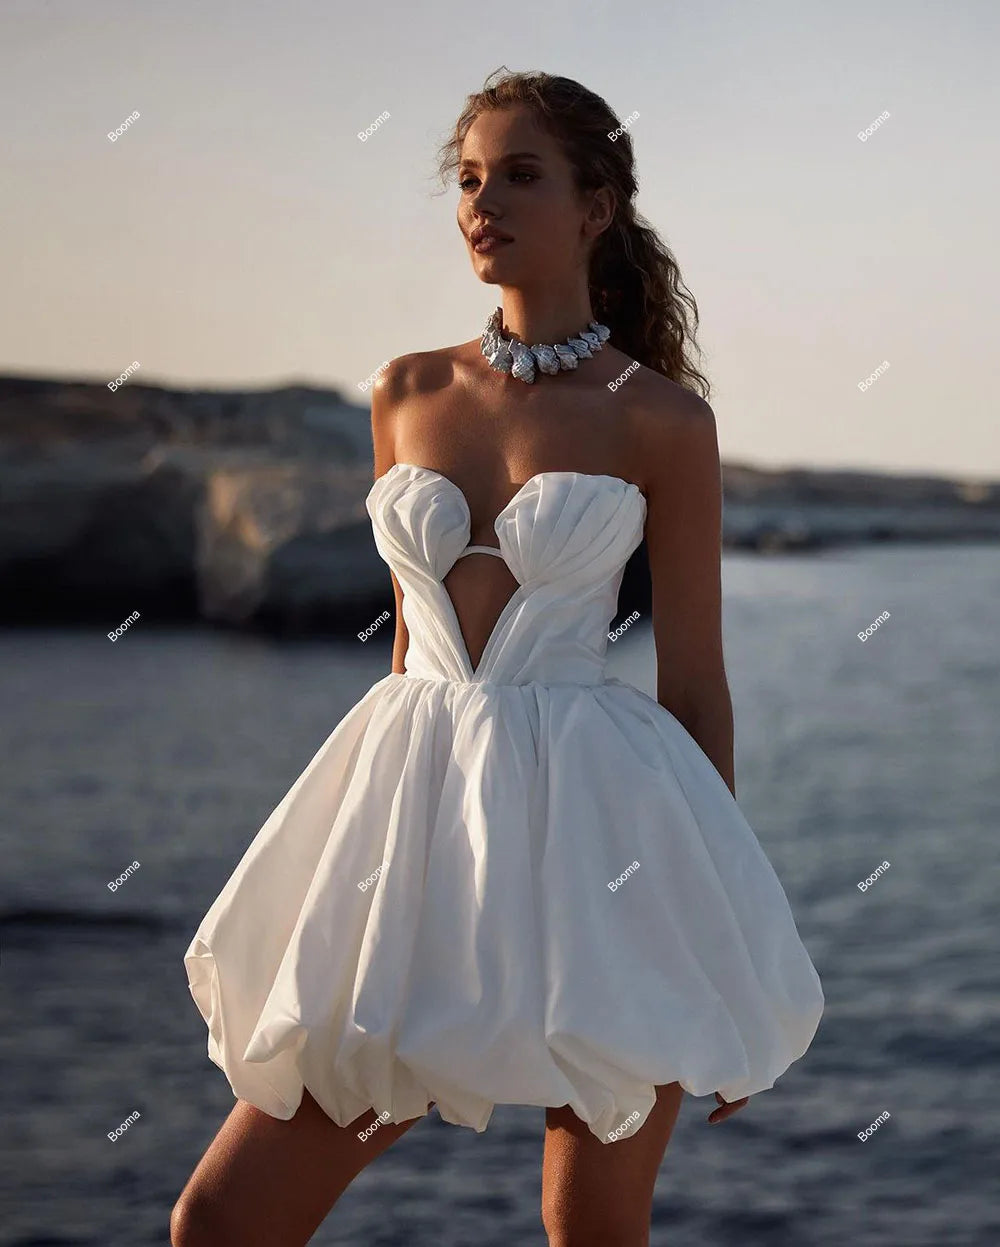 Semplici abiti da sposa corti semplici abiti da ballo senza spalline sirena abiti da sera per la sirena per abiti da cocktail da donna